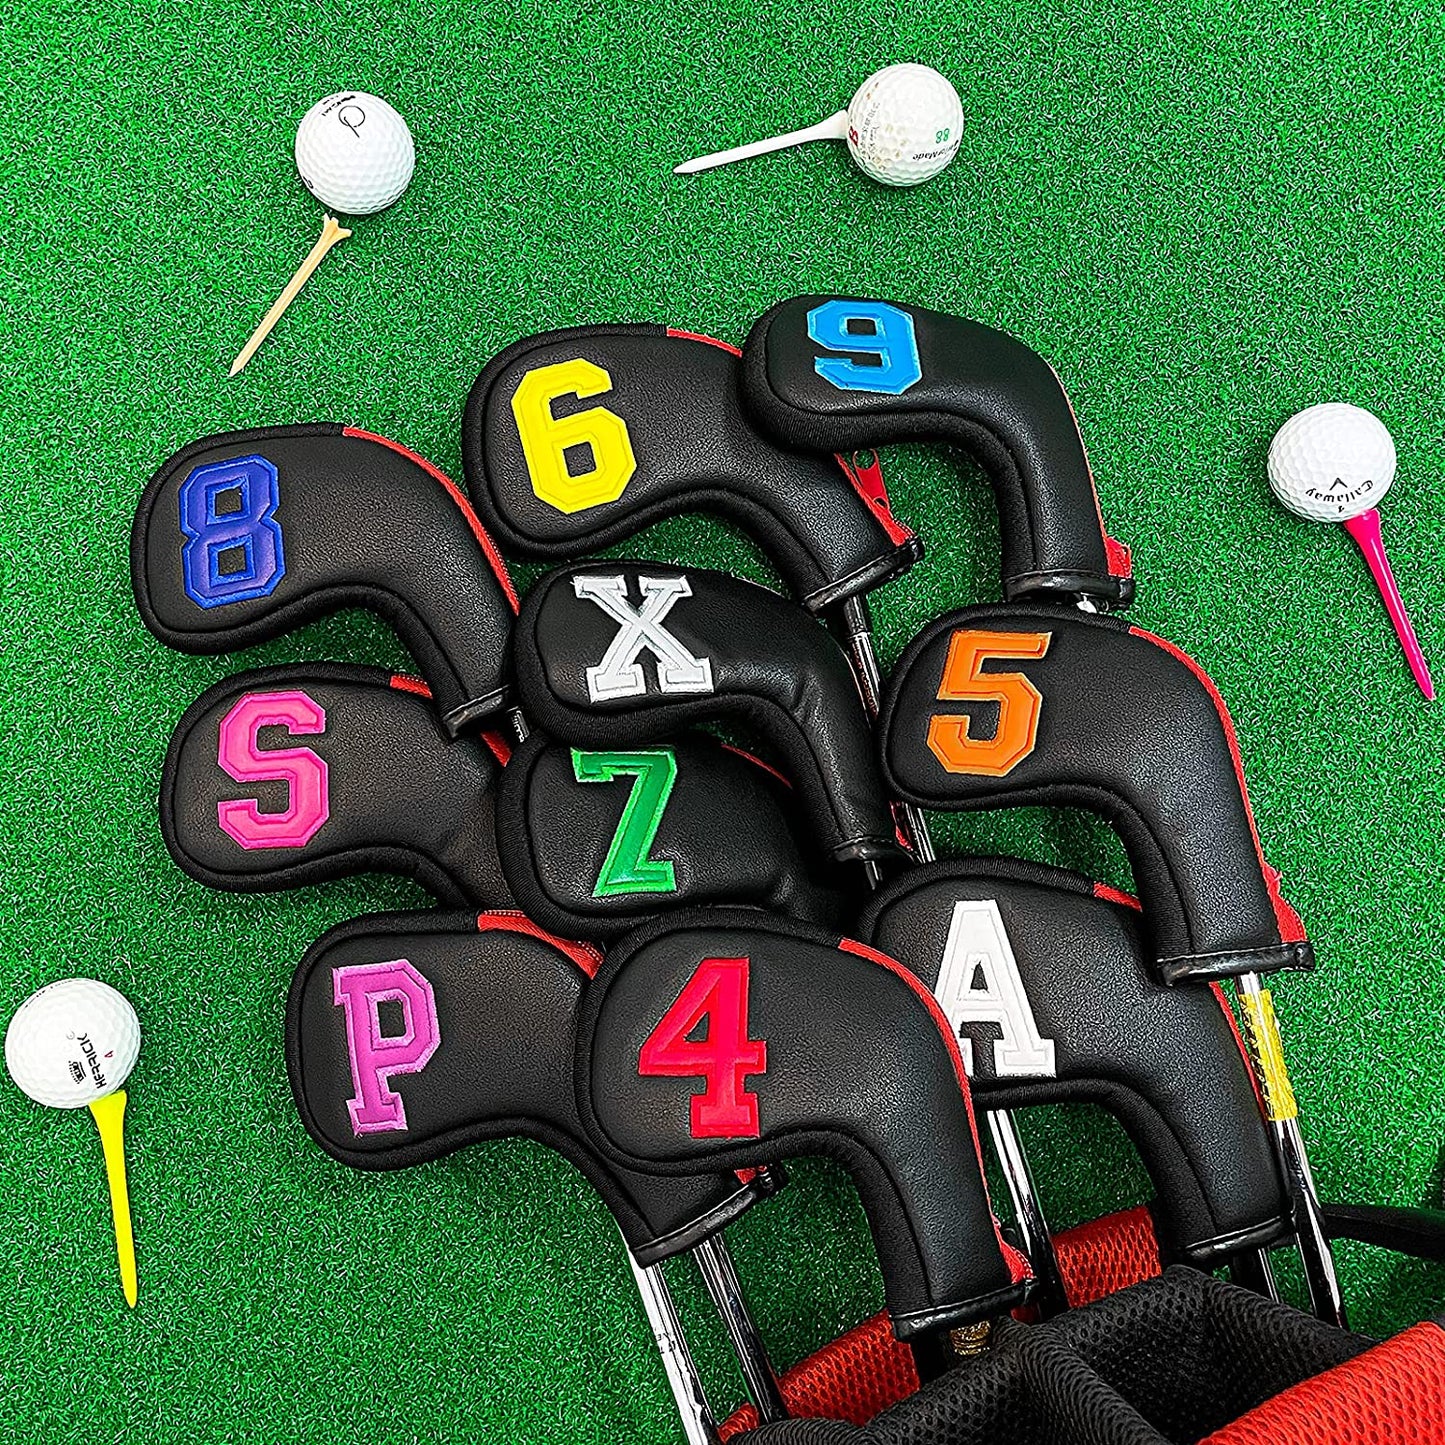 Golf Head Covers für Iron Headcover mit Reißverschluss, schwarzes Leder, 10er-Set, bunte Zahlen, besticktes PU-Leder, wasserdicht, passend für alle Marken 